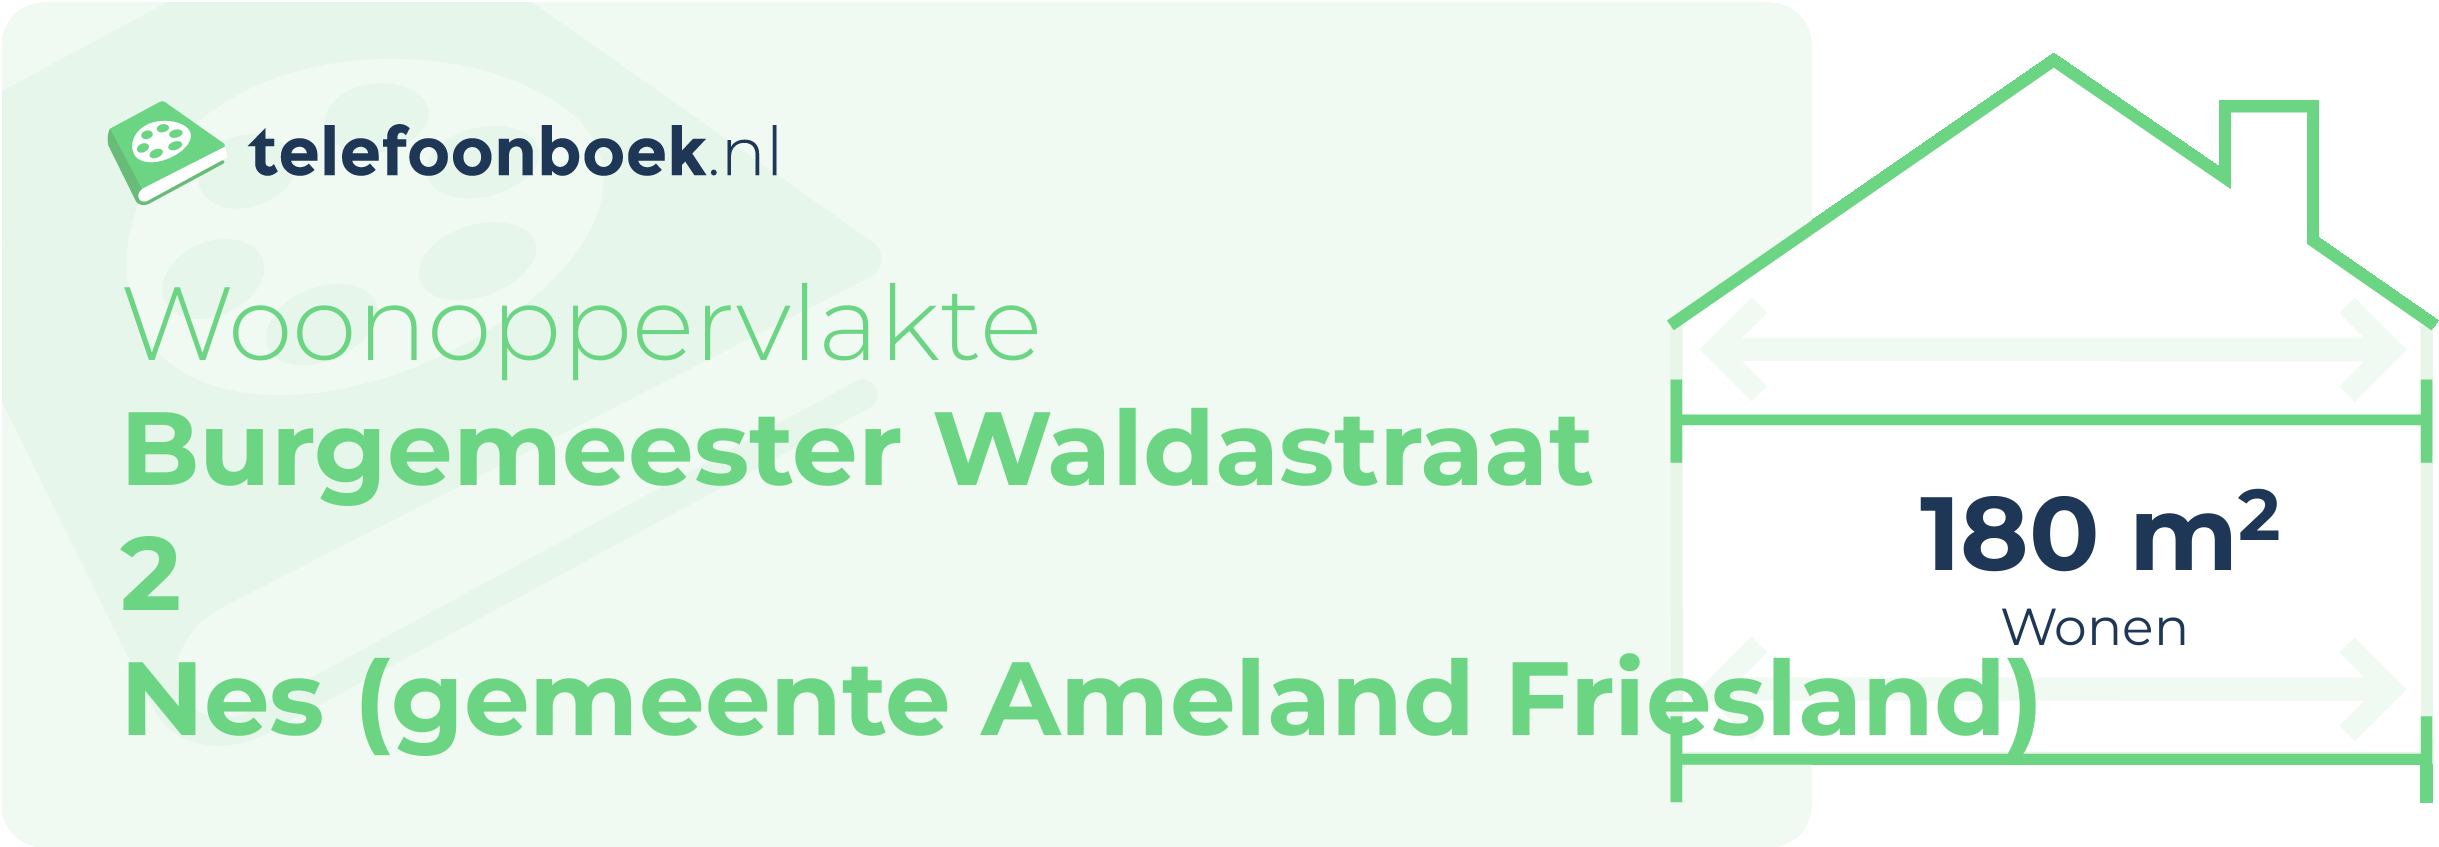 Woonoppervlakte Burgemeester Waldastraat 2 Nes (gemeente Ameland Friesland)